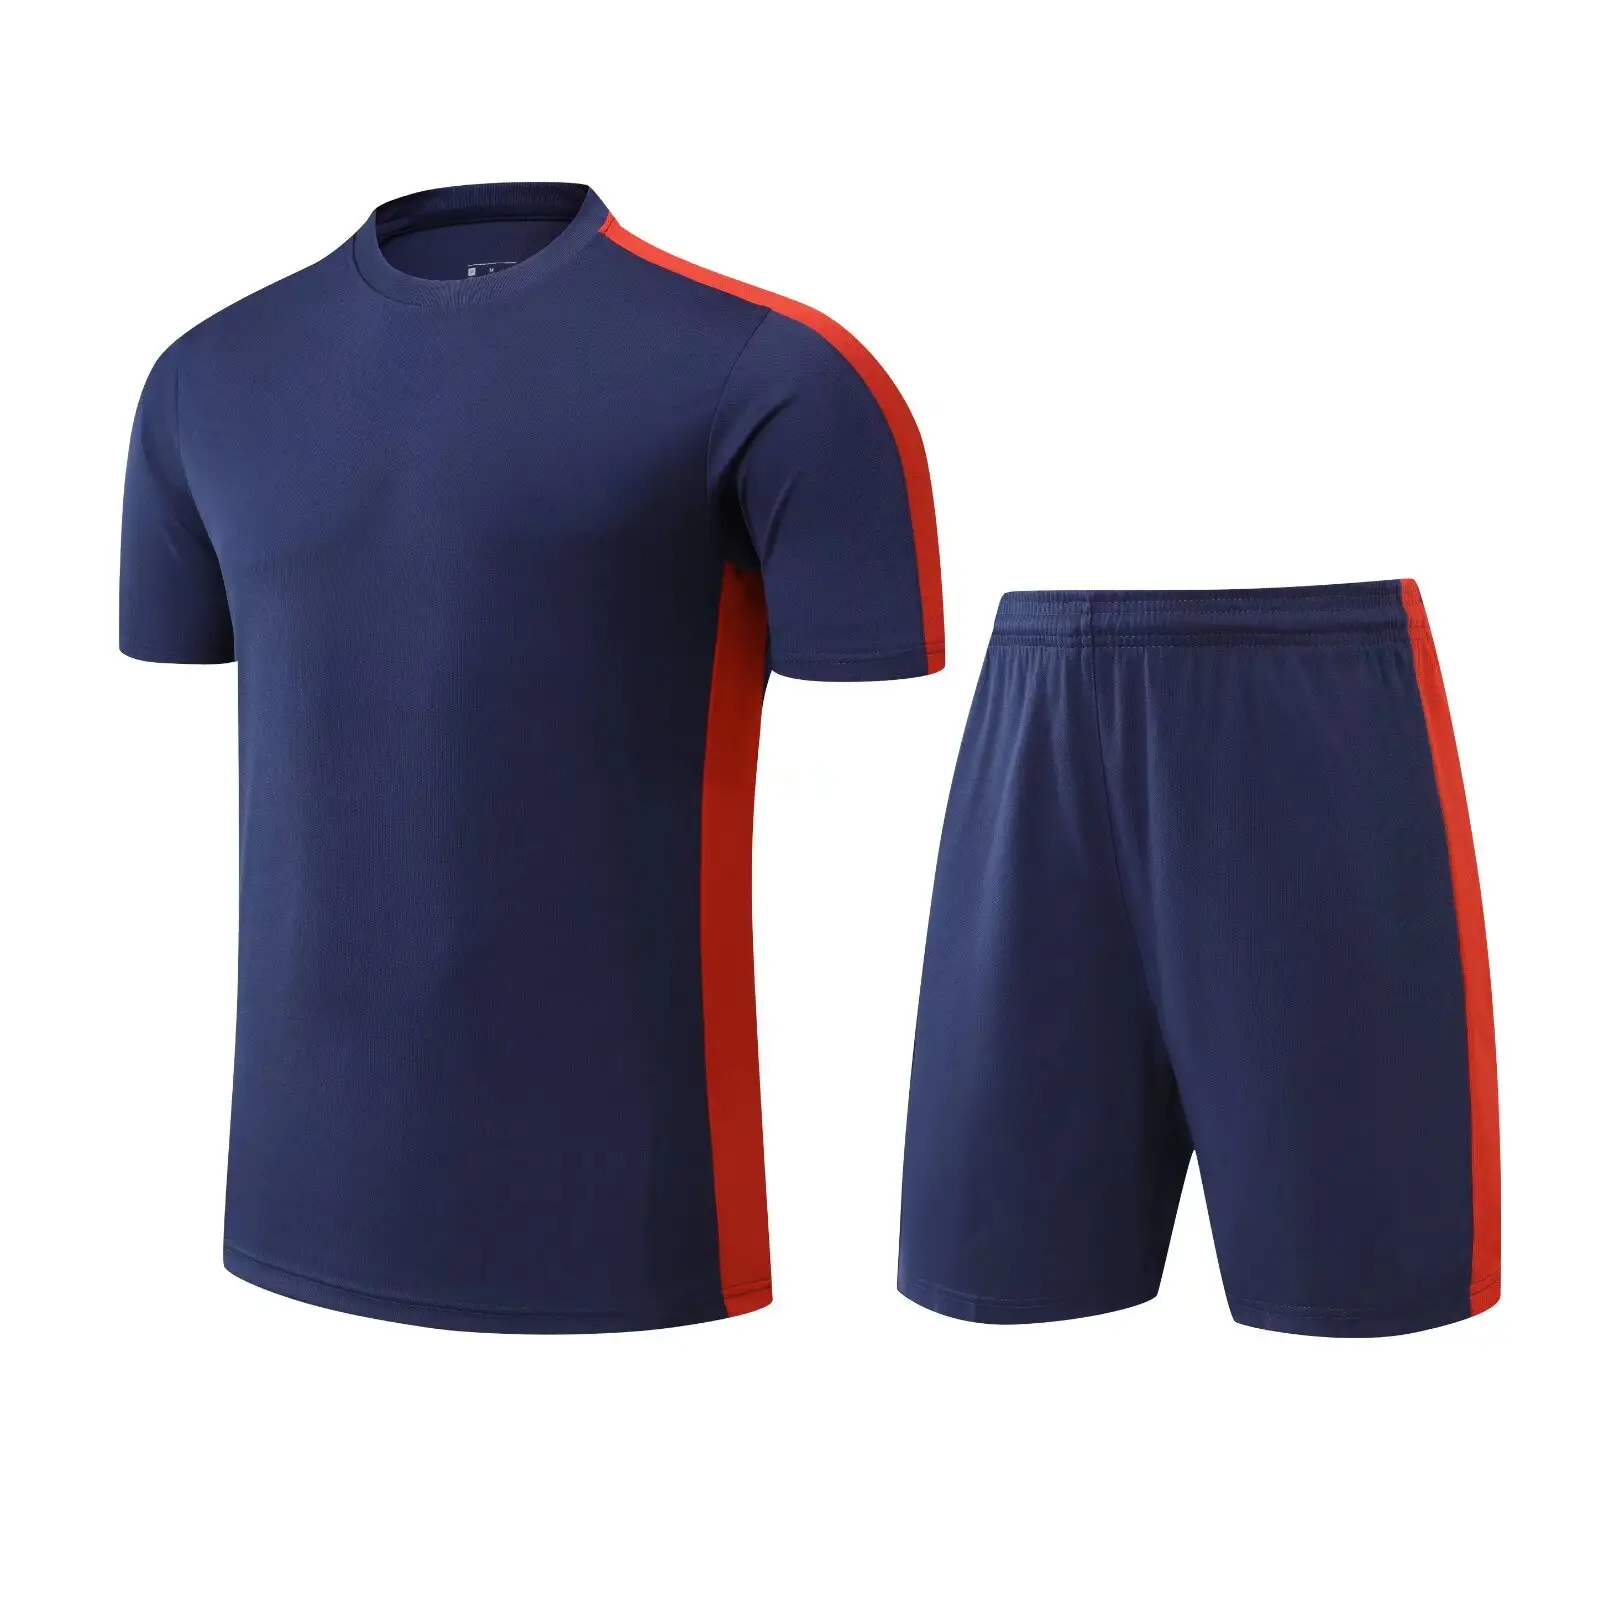 सस्ती कीमत वाली सॉकर शर्ट प्रशिक्षण उच्च गुणवत्ता वाली फुटबॉल जर्सी फुटबॉल टीम क्लब बच्चों और पुरुषों के लिए चुनें